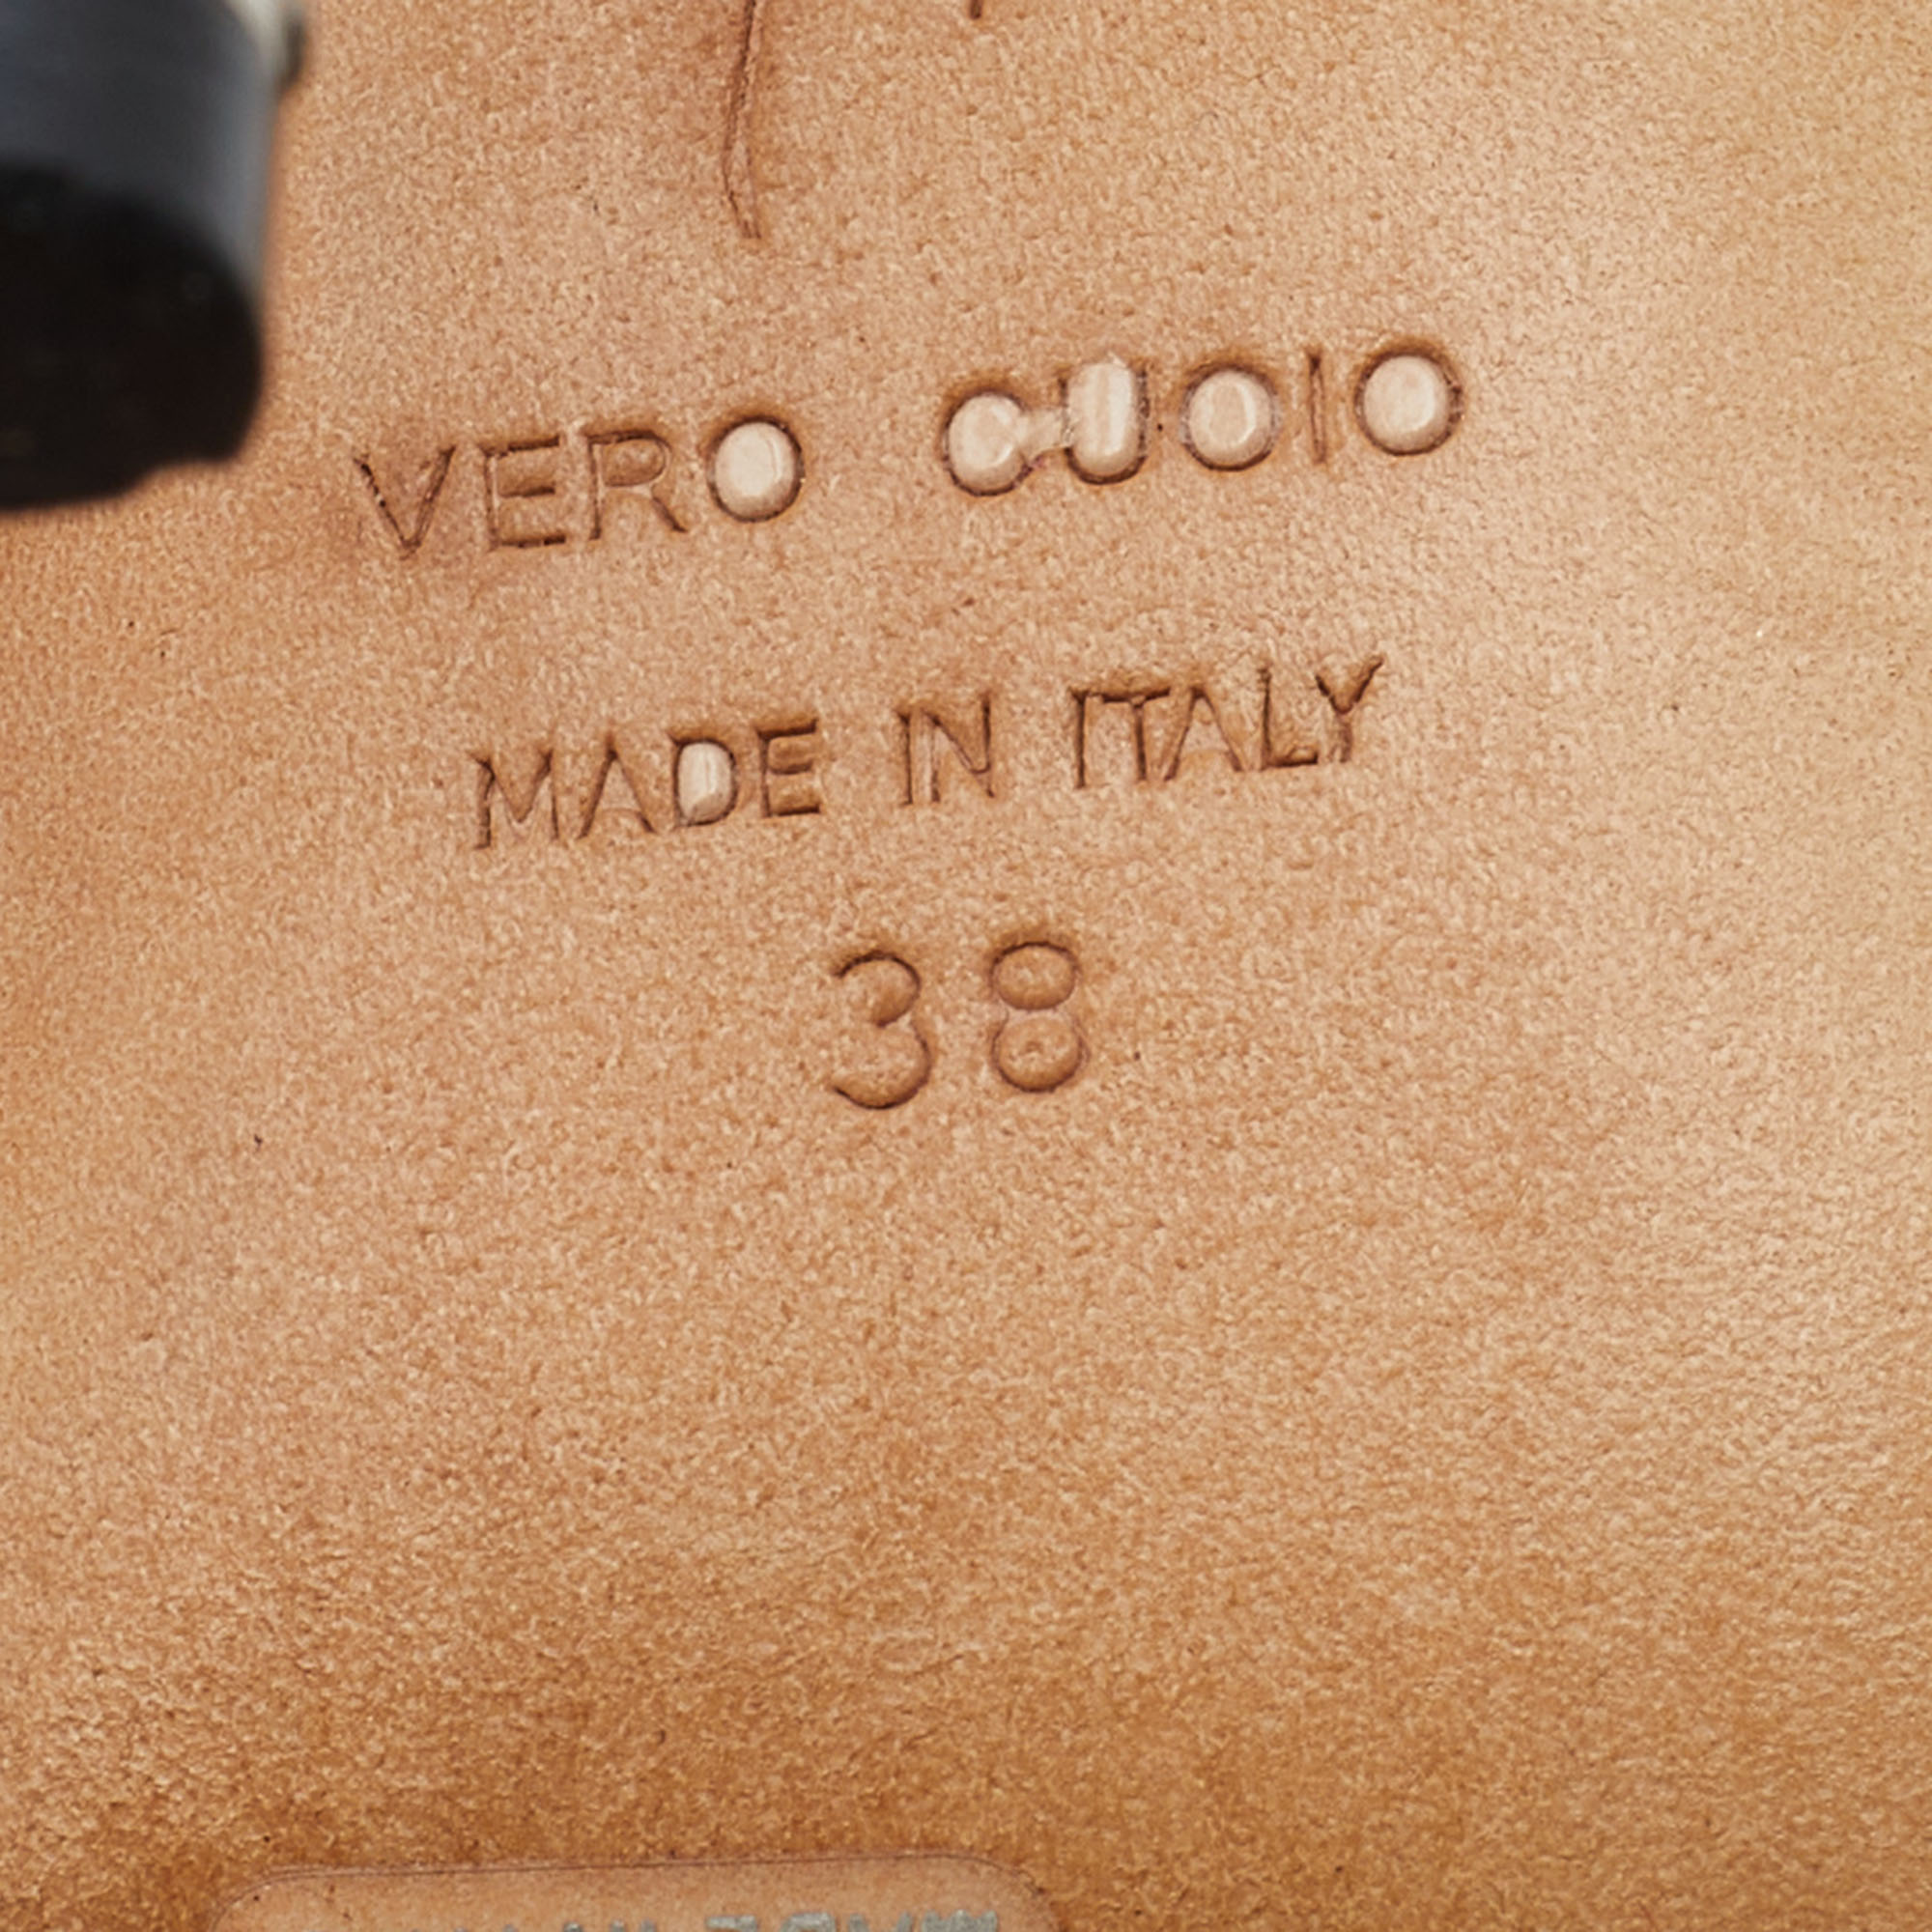 Giuseppe Zanotti Silver/Black Leather Bow Platform Slingback Sandals Size 38